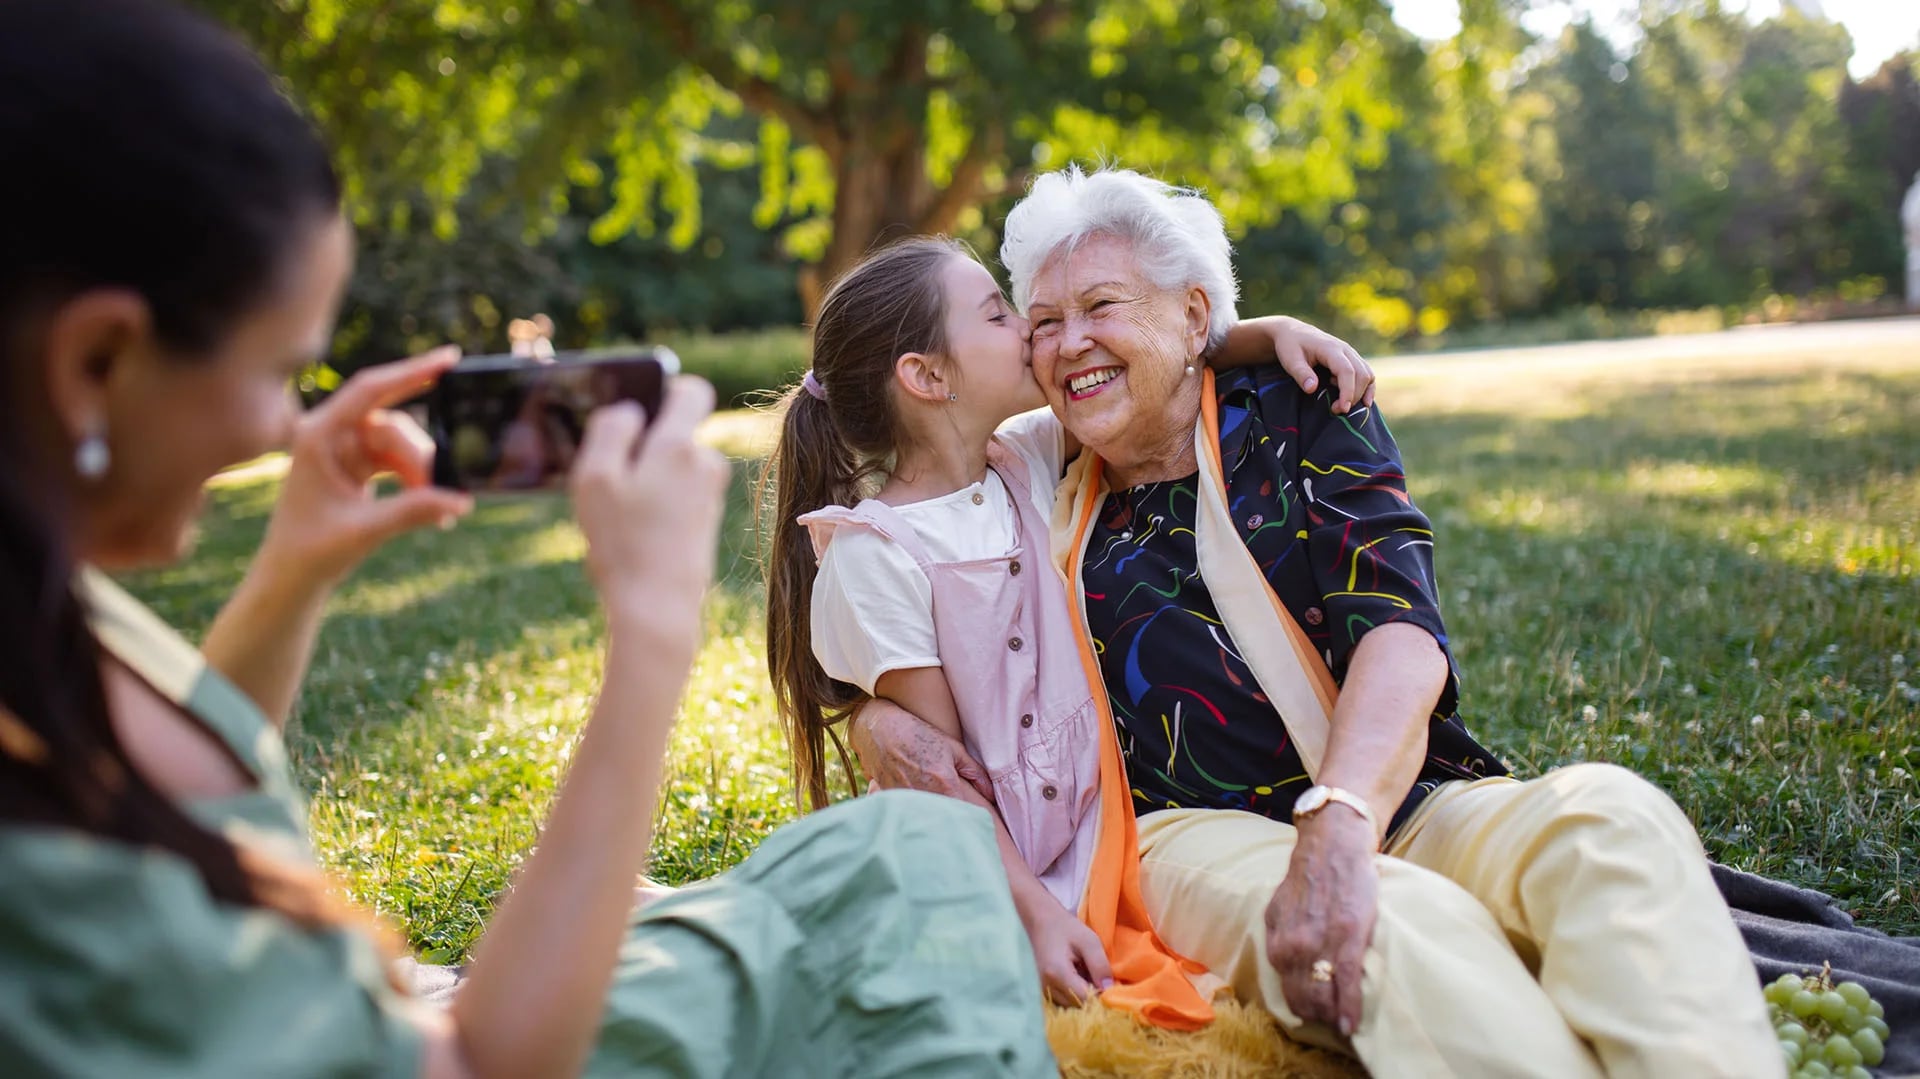 Hablar con familiares o amigos que puedan recordar eventos compartidos de la infancia estimula los recuerdos  (Getty Images)